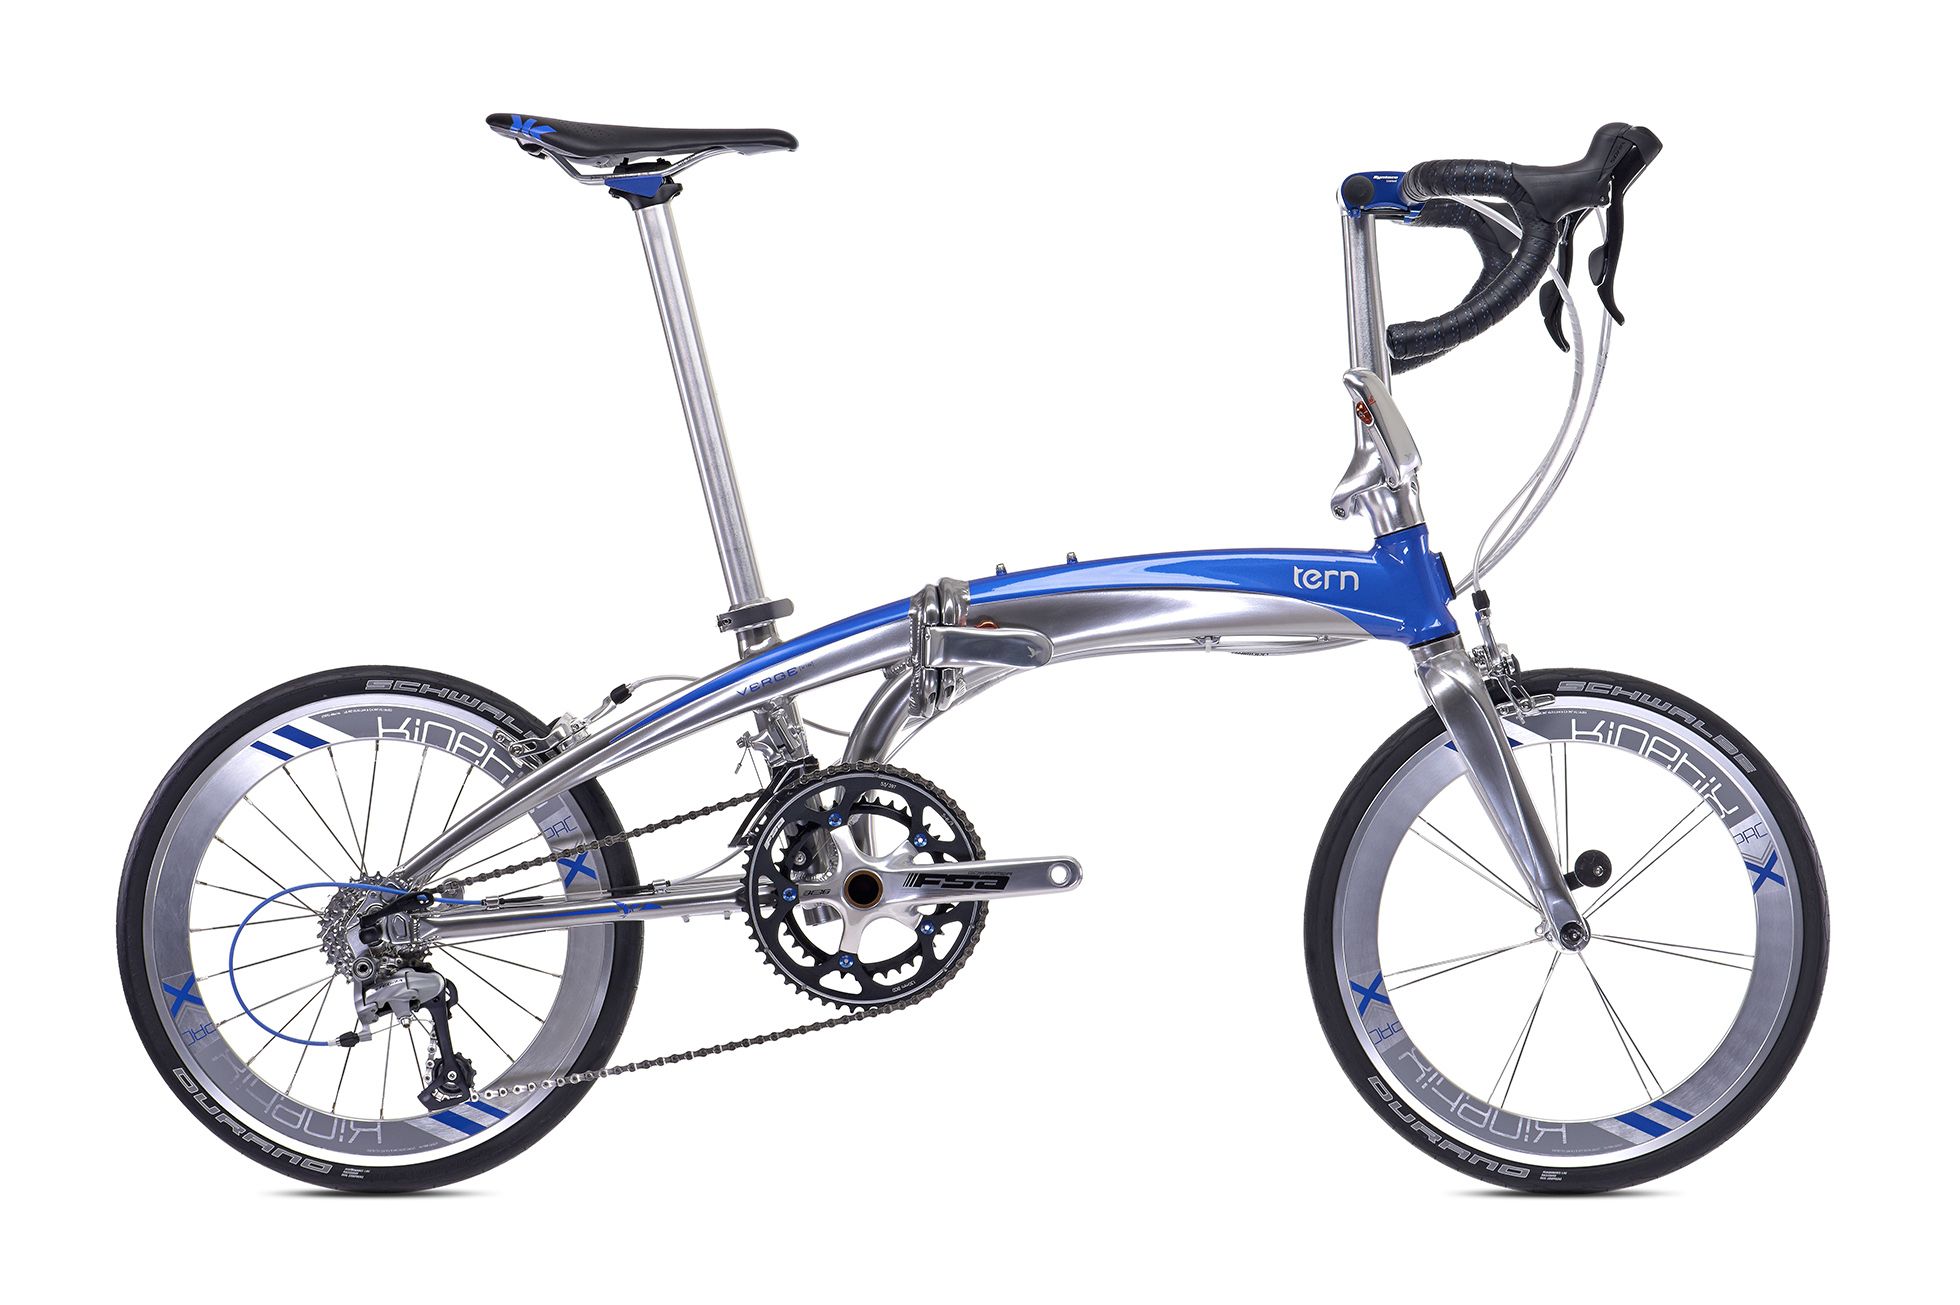  Велосипед Tern Verge X18 2016